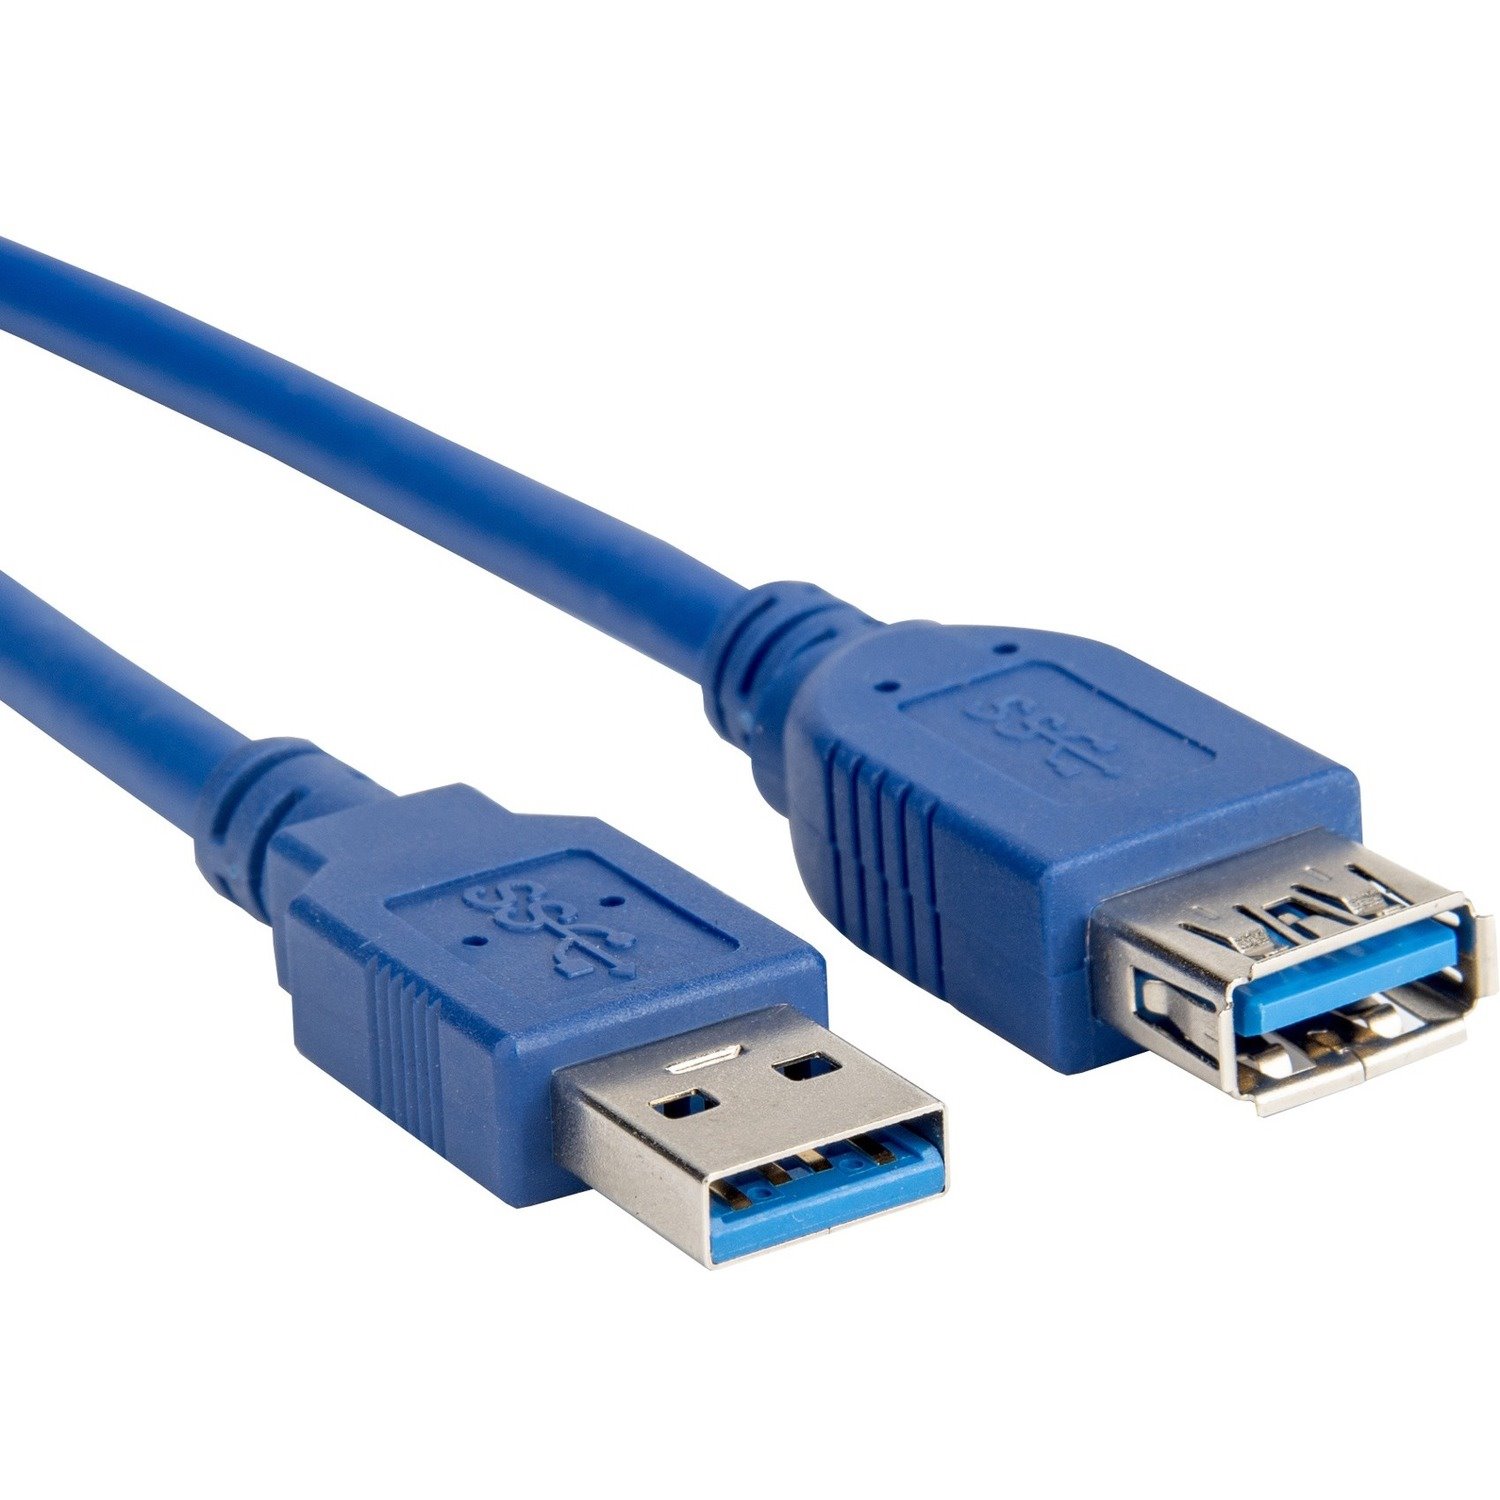 Rocstor 6FT USB 3.0 - EXTENSION CABLE 6FT 1.83M F/M -TYPE A F/M - BLUE